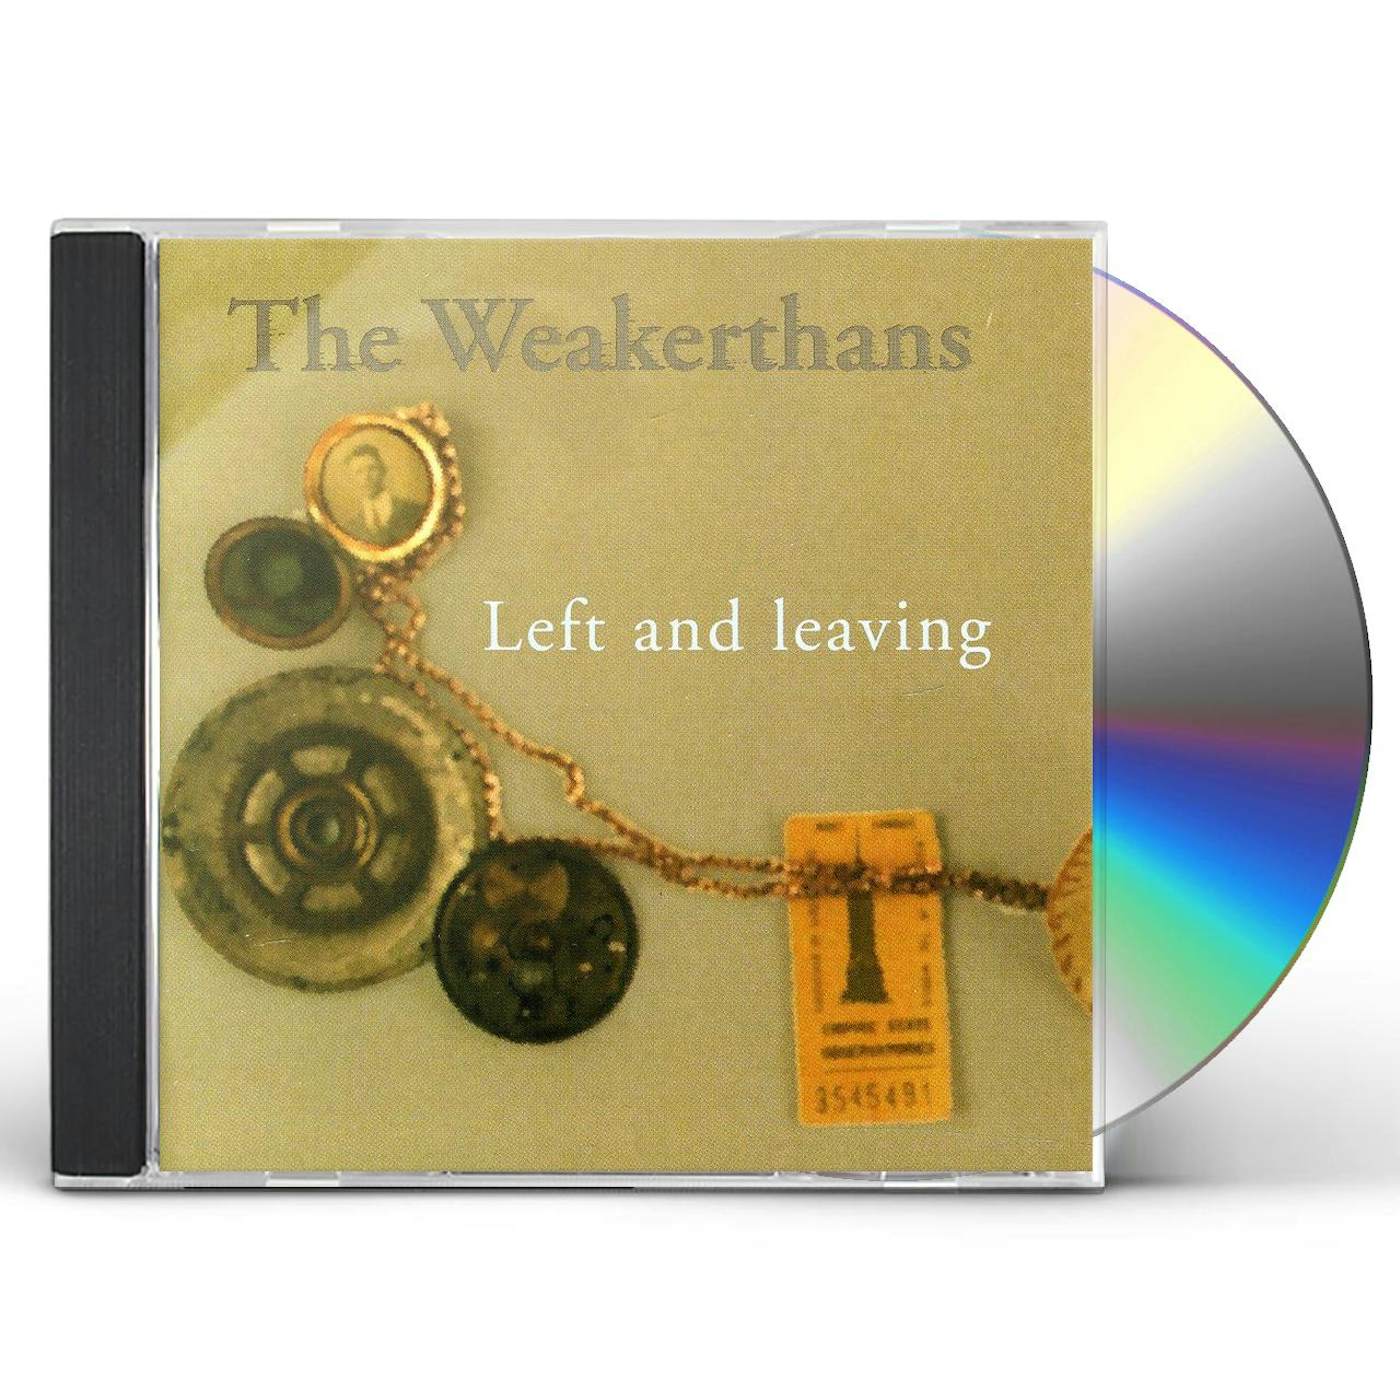 The Weakerthans LEFT & LEAVING CD